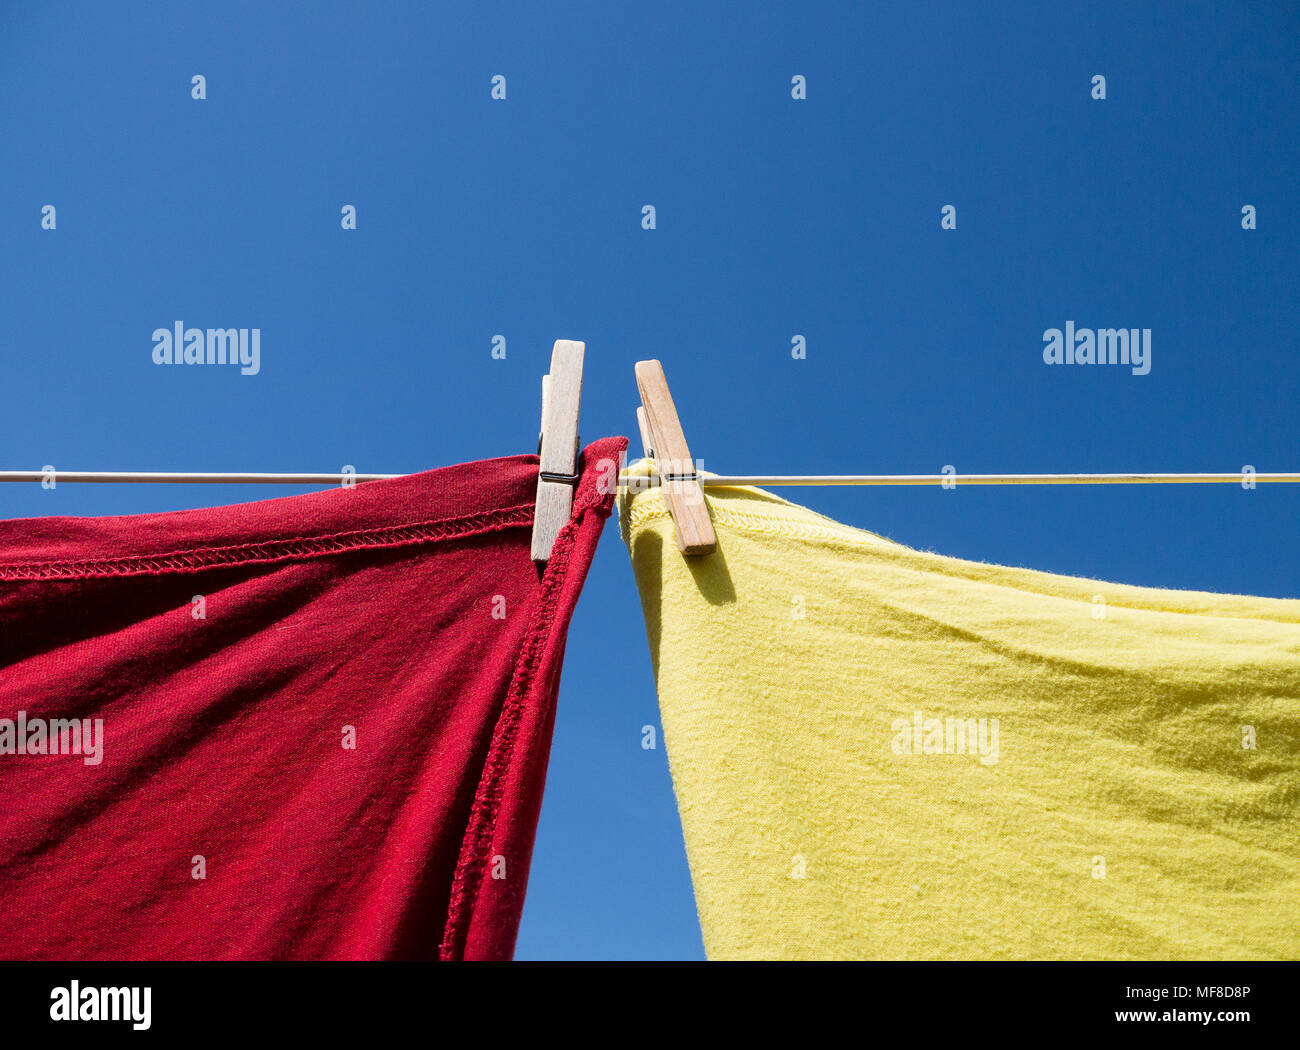 Eine rote und eine gelbe T-Shirt hängen an einer Wäscheleine, gehalten, mit Wäscheklammern aus Holz. In der Farbe von unten geschossen, mit einem klaren blauen Himmel hinter sich. Stockfoto